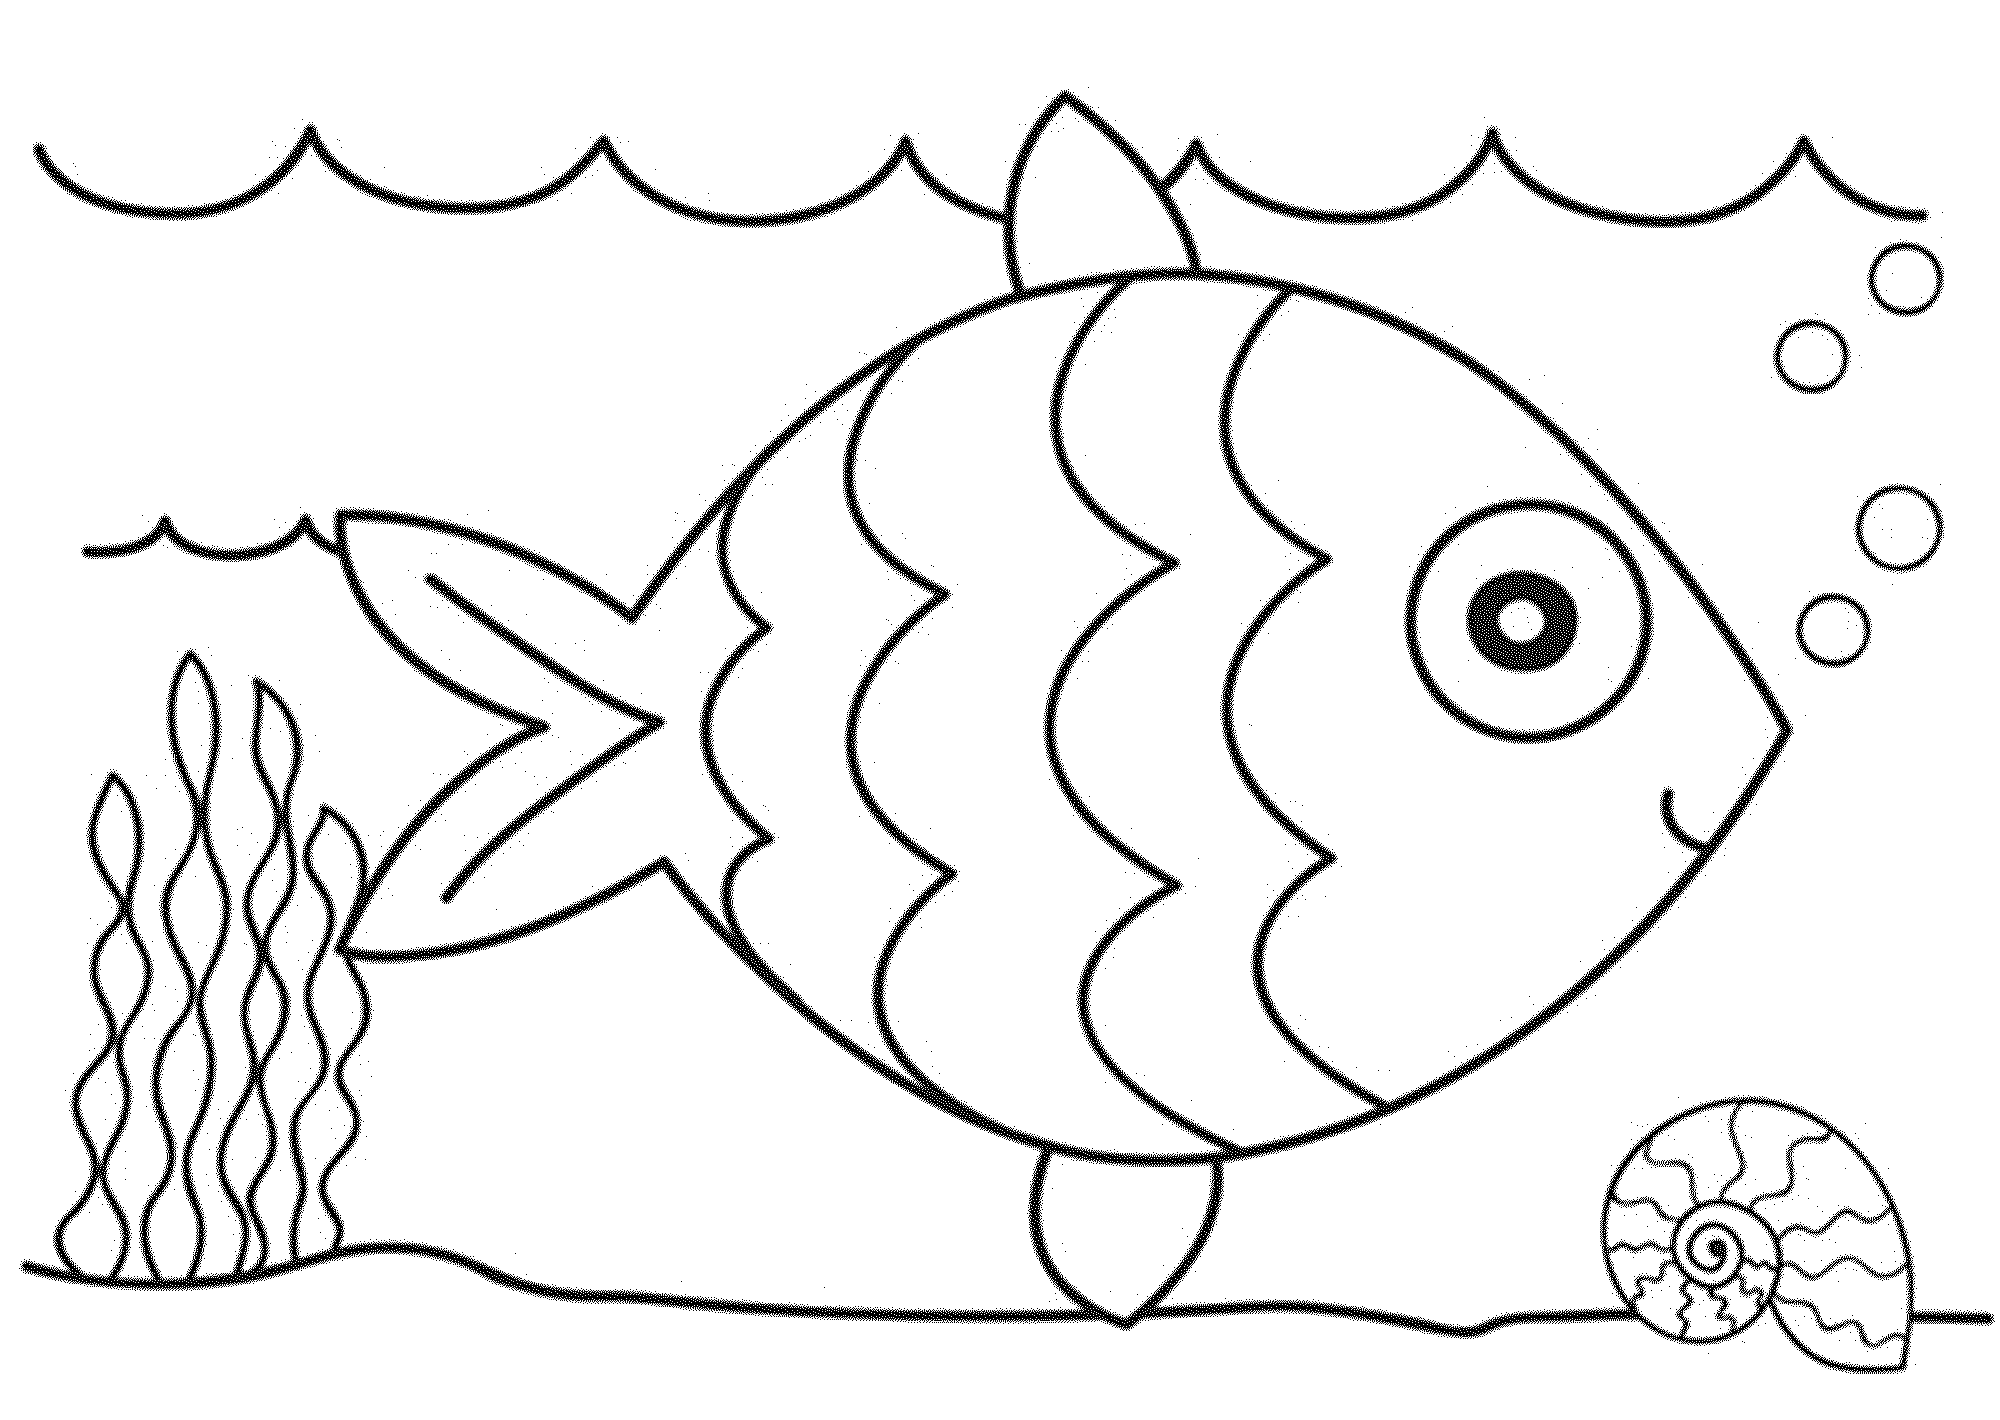 Tranh tô màu hình con cá cute cho bé  14